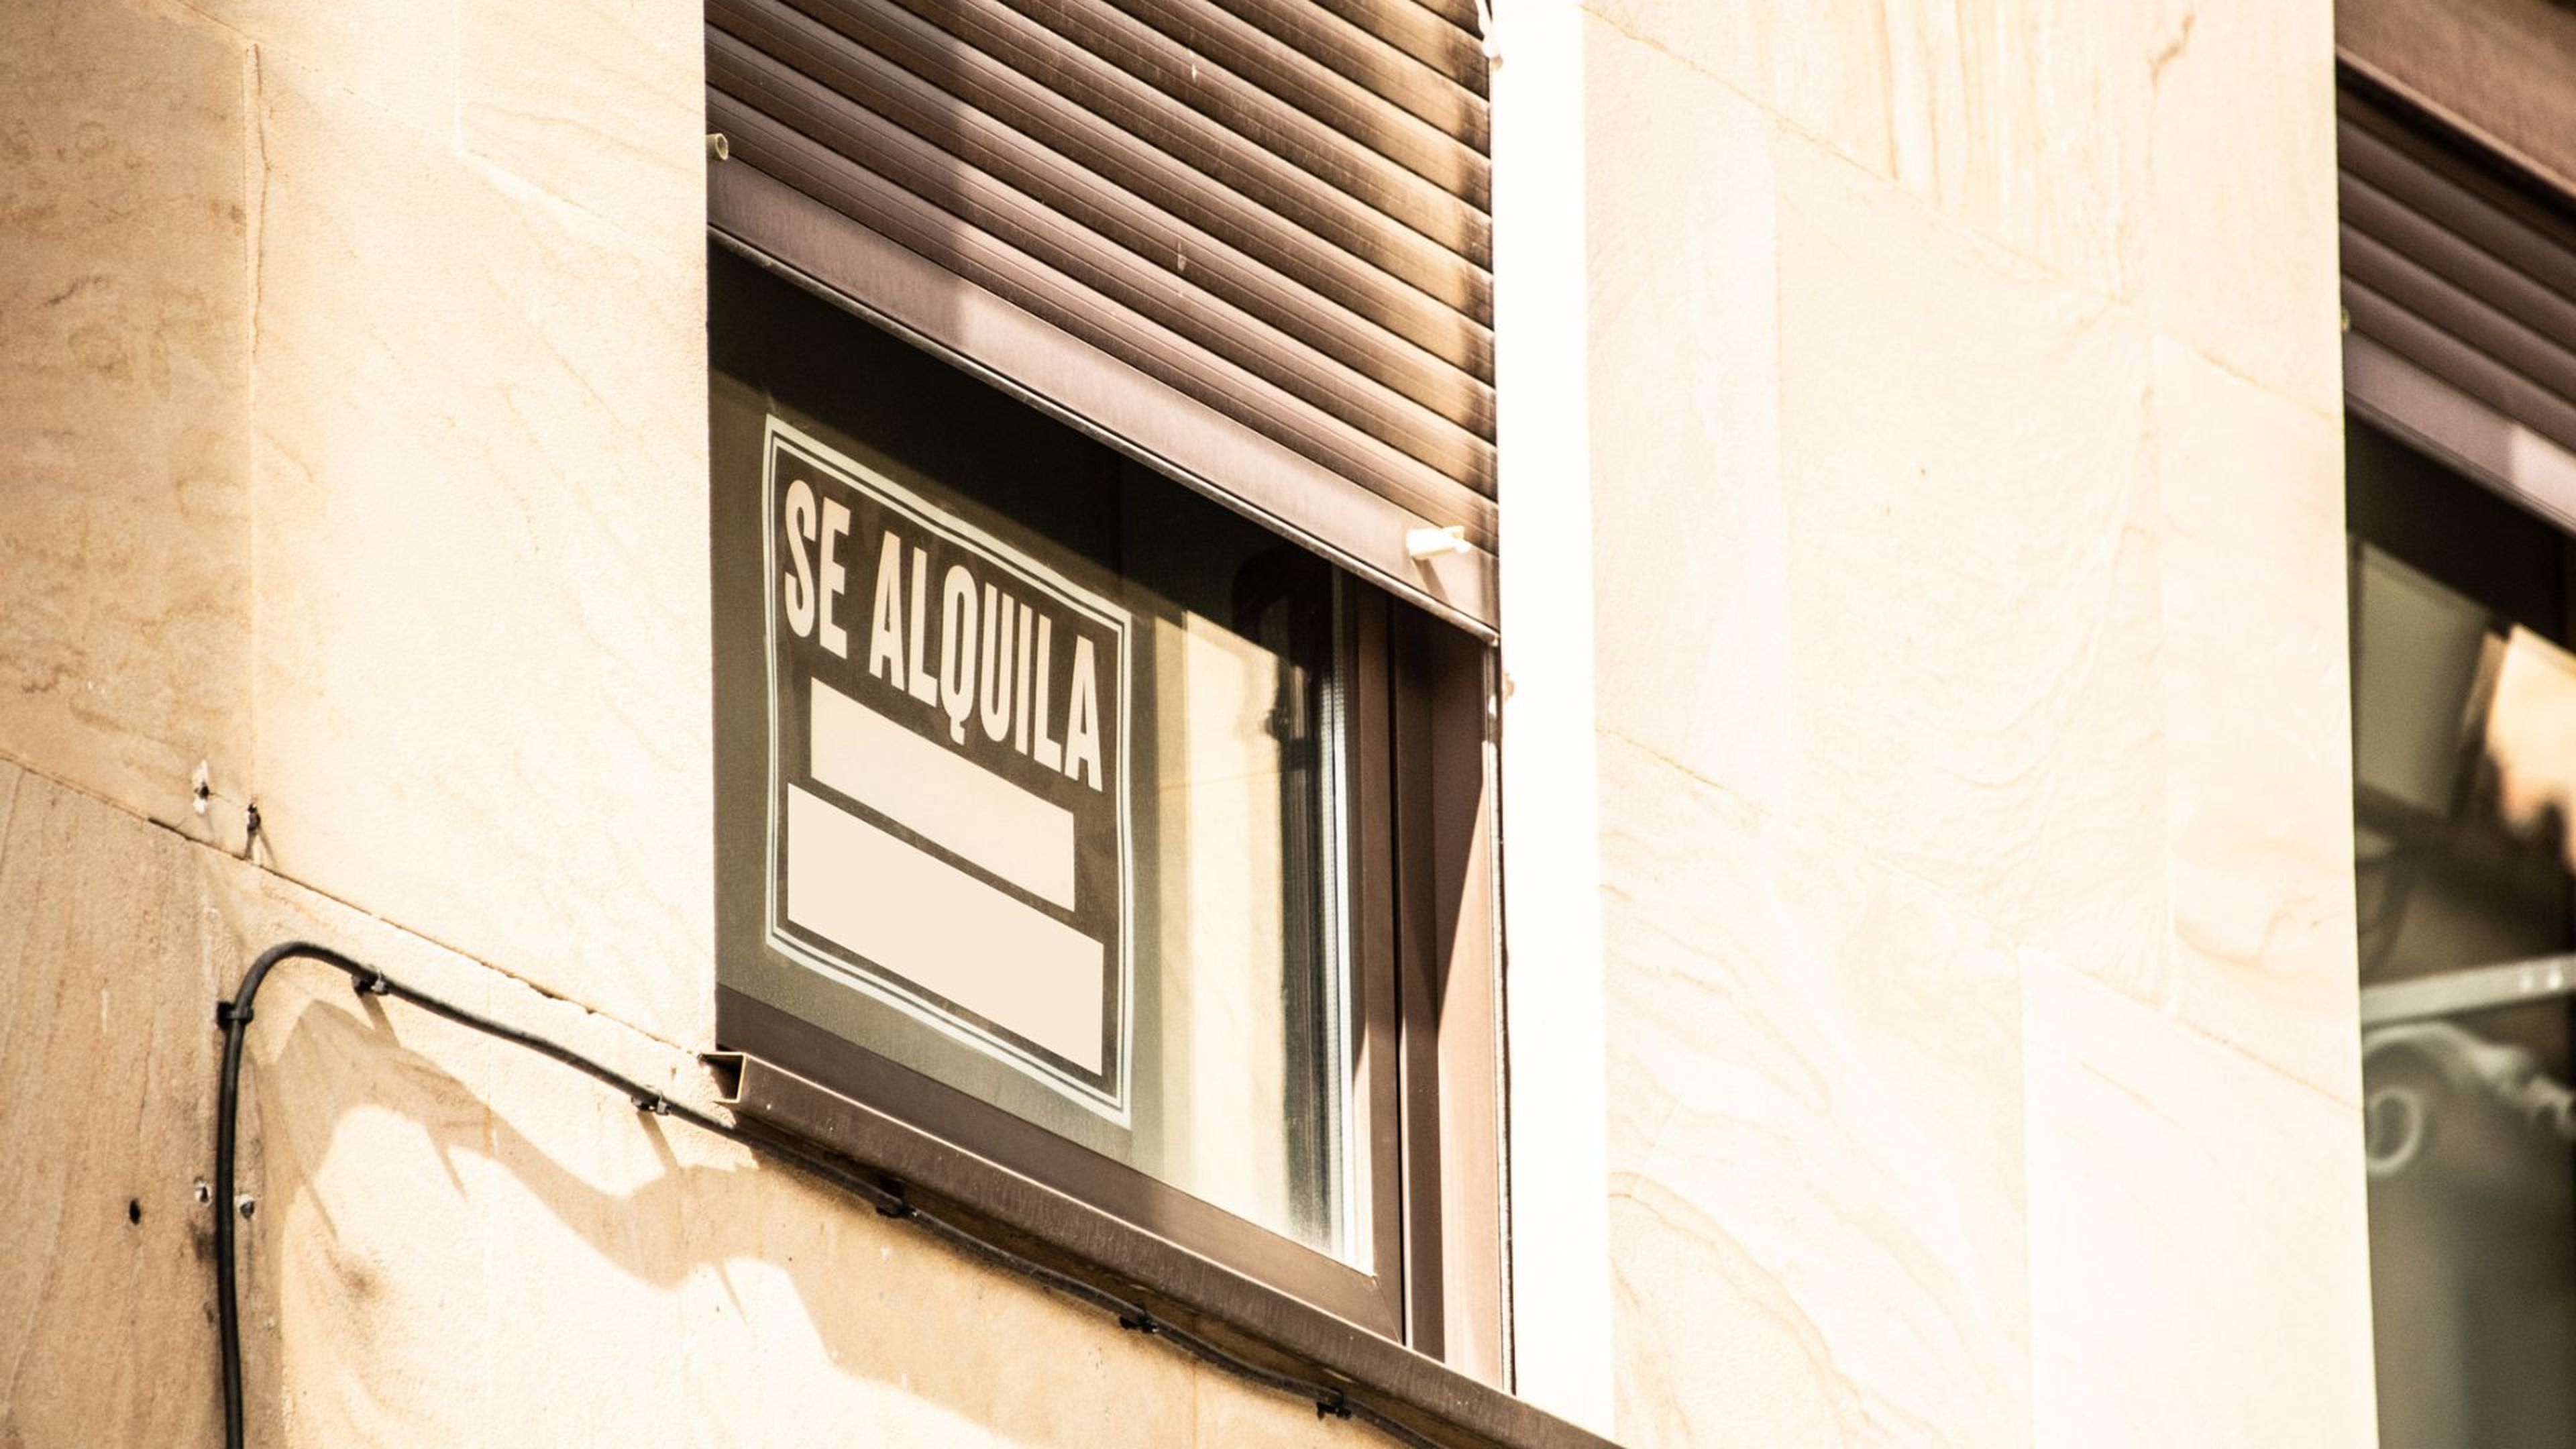 Un cartel de "Se alquila" en una ventana.